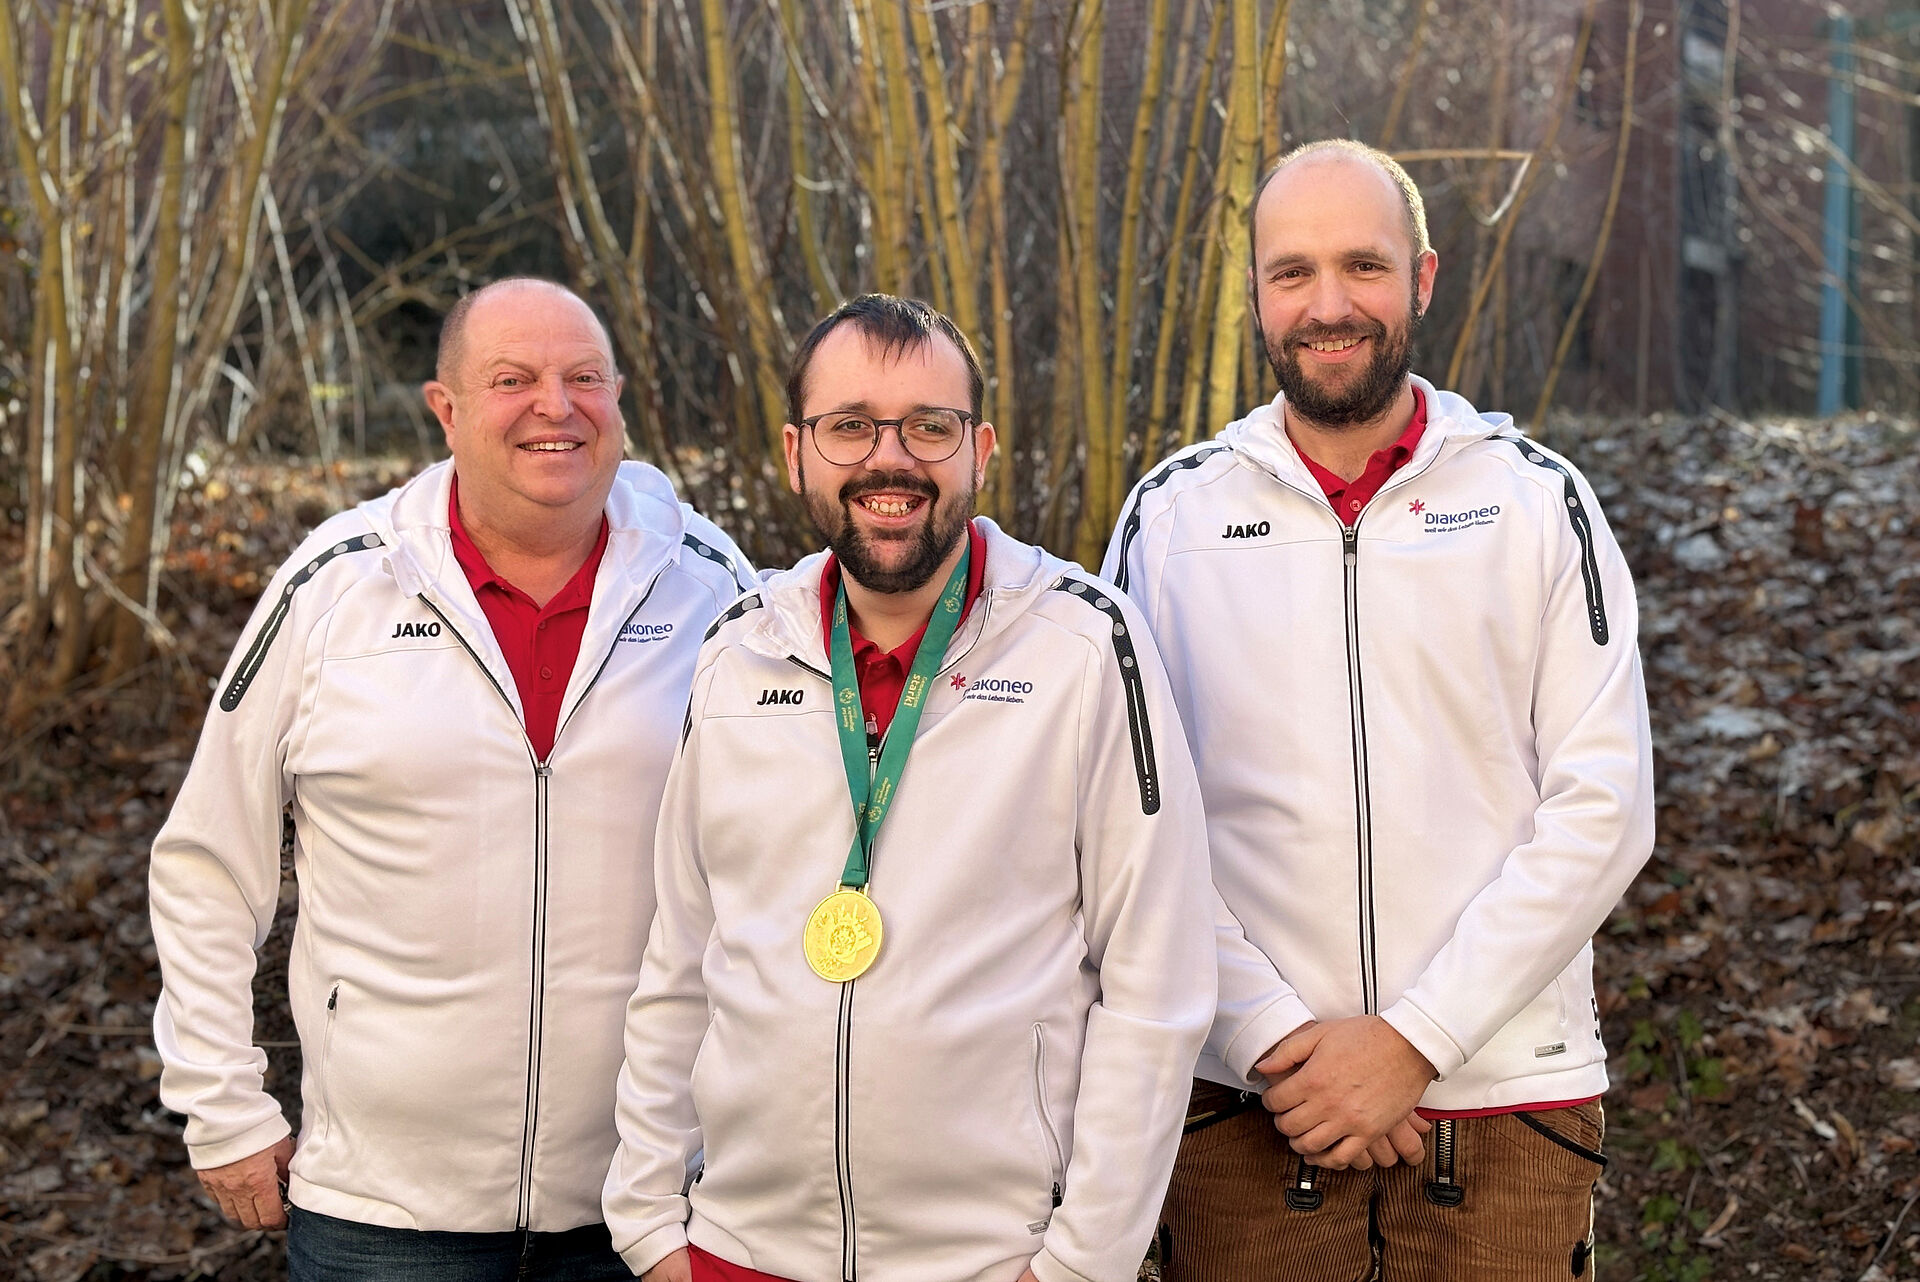 Diakoneo Athleten gehen bei den Winterspielen in Thüringen an den Start